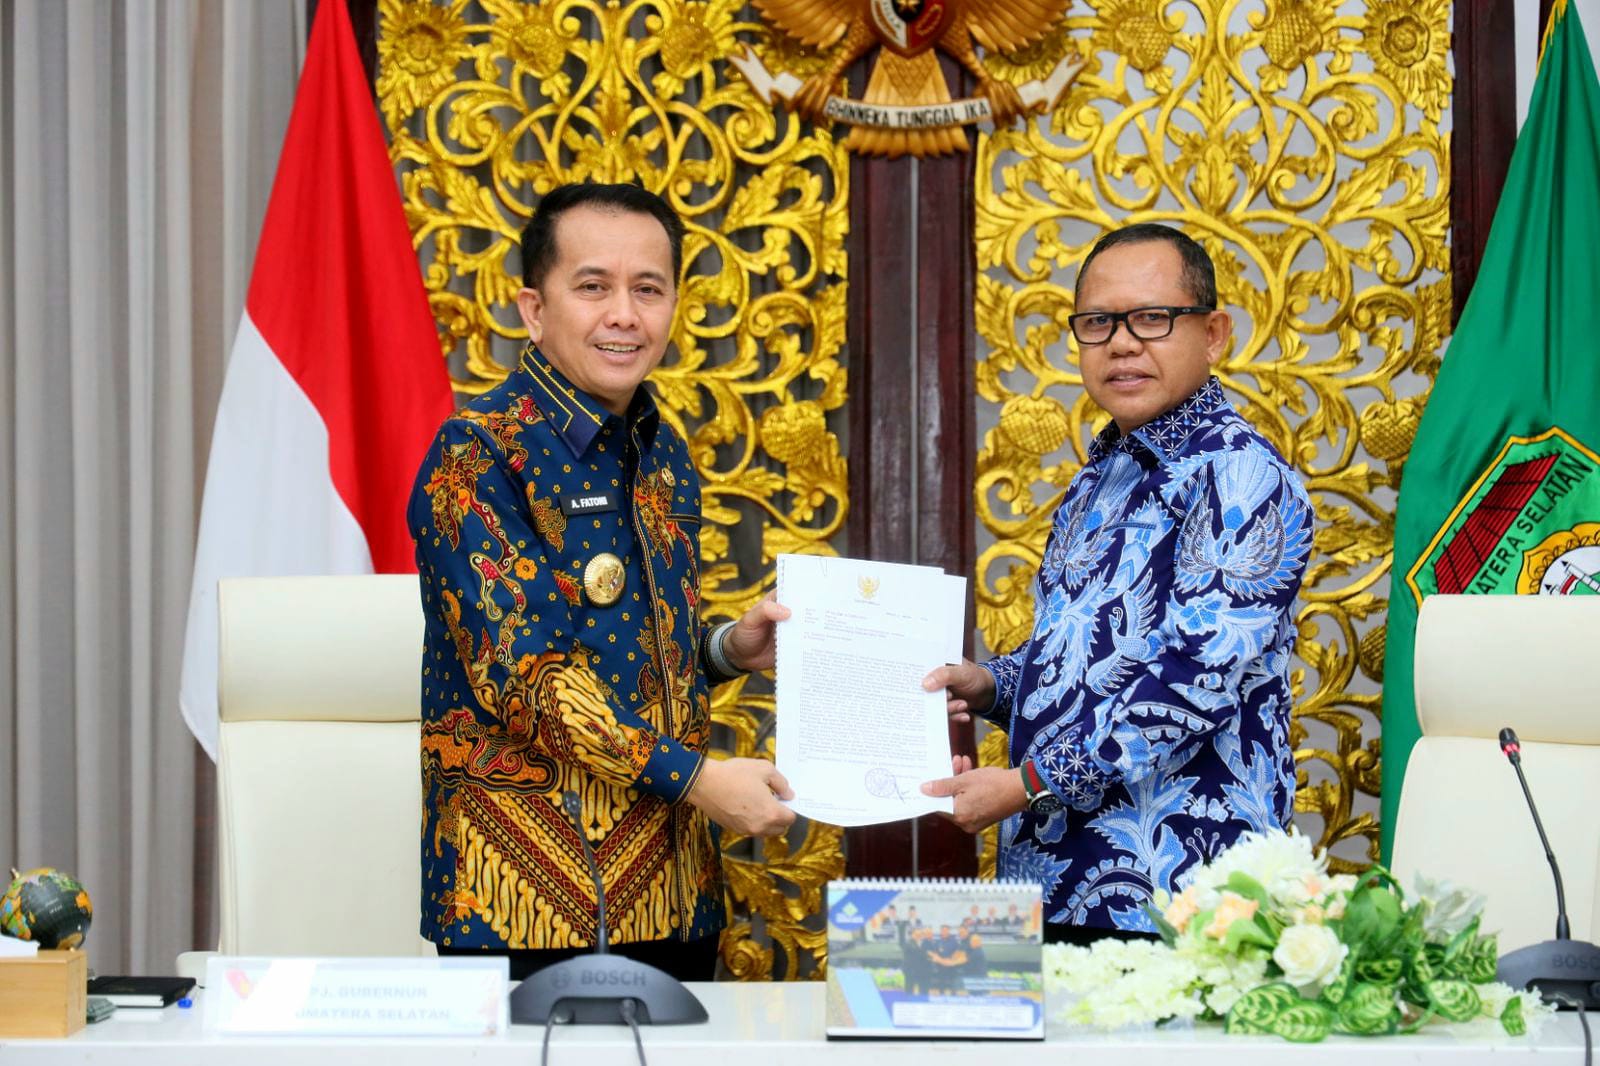 Pj Gubernur Sumsel Dorong Terwujudnya Pembangunan 2 Jembatan Penghubung OKI Sumsel dengan Mesuji Lampung